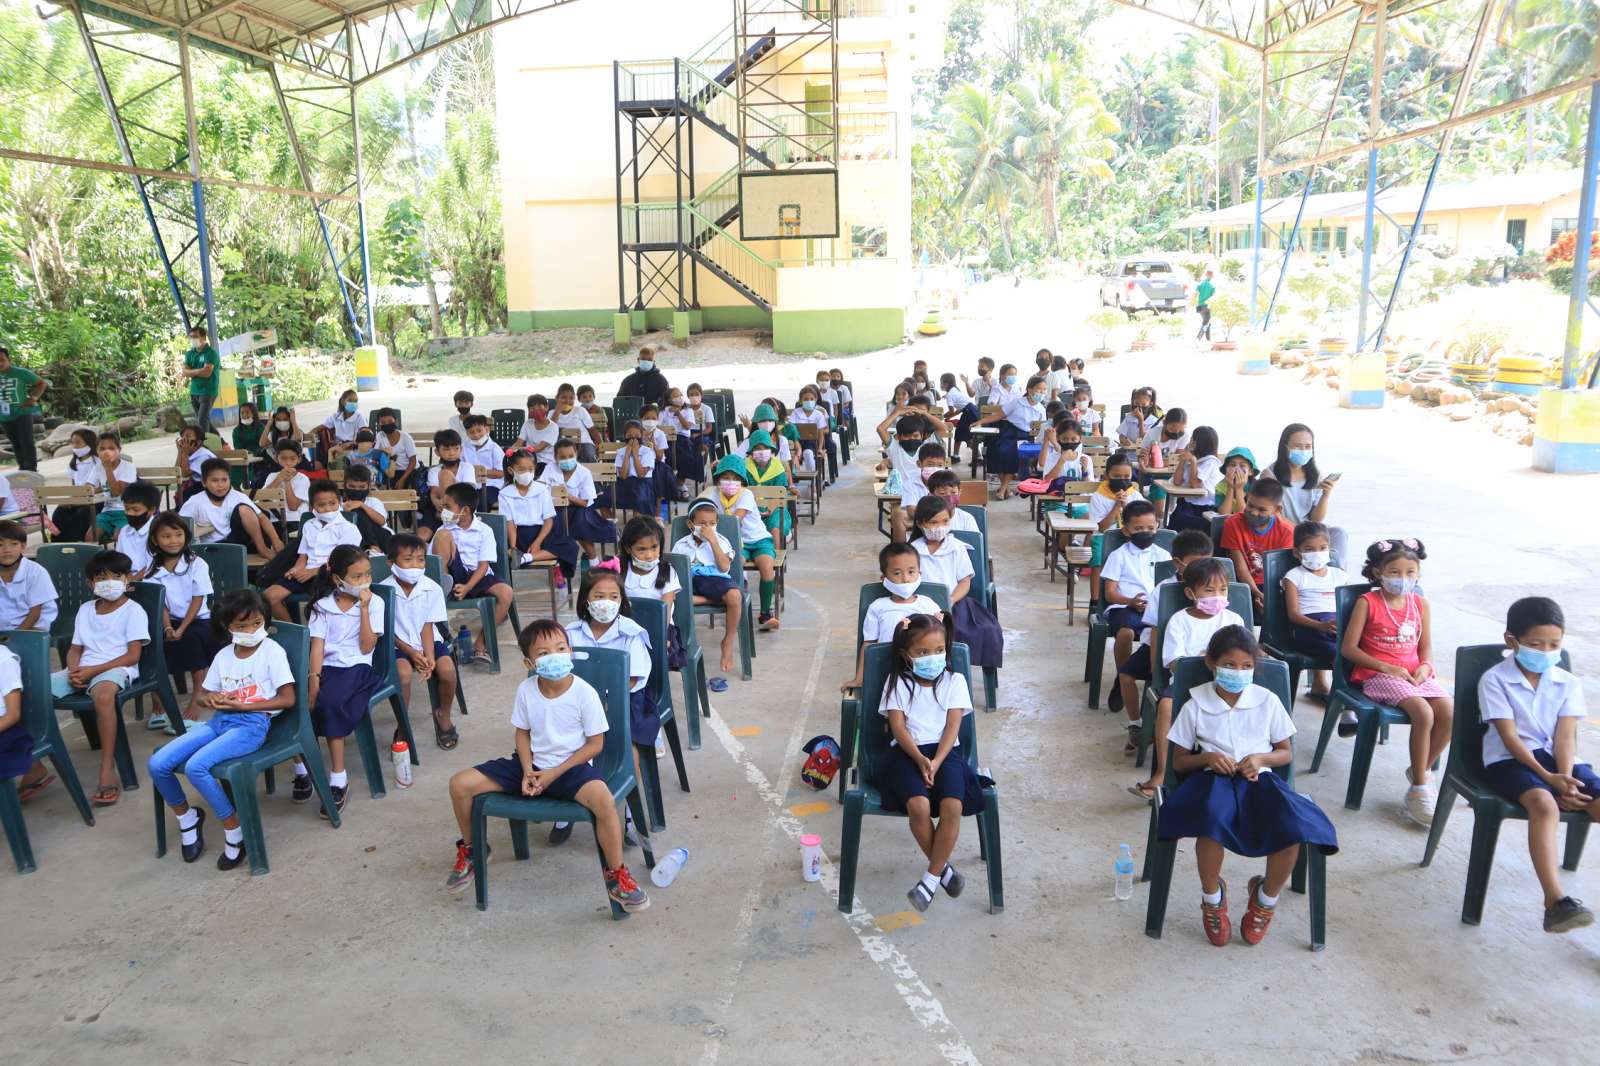 September 23, 2022-Dominga Elementary School